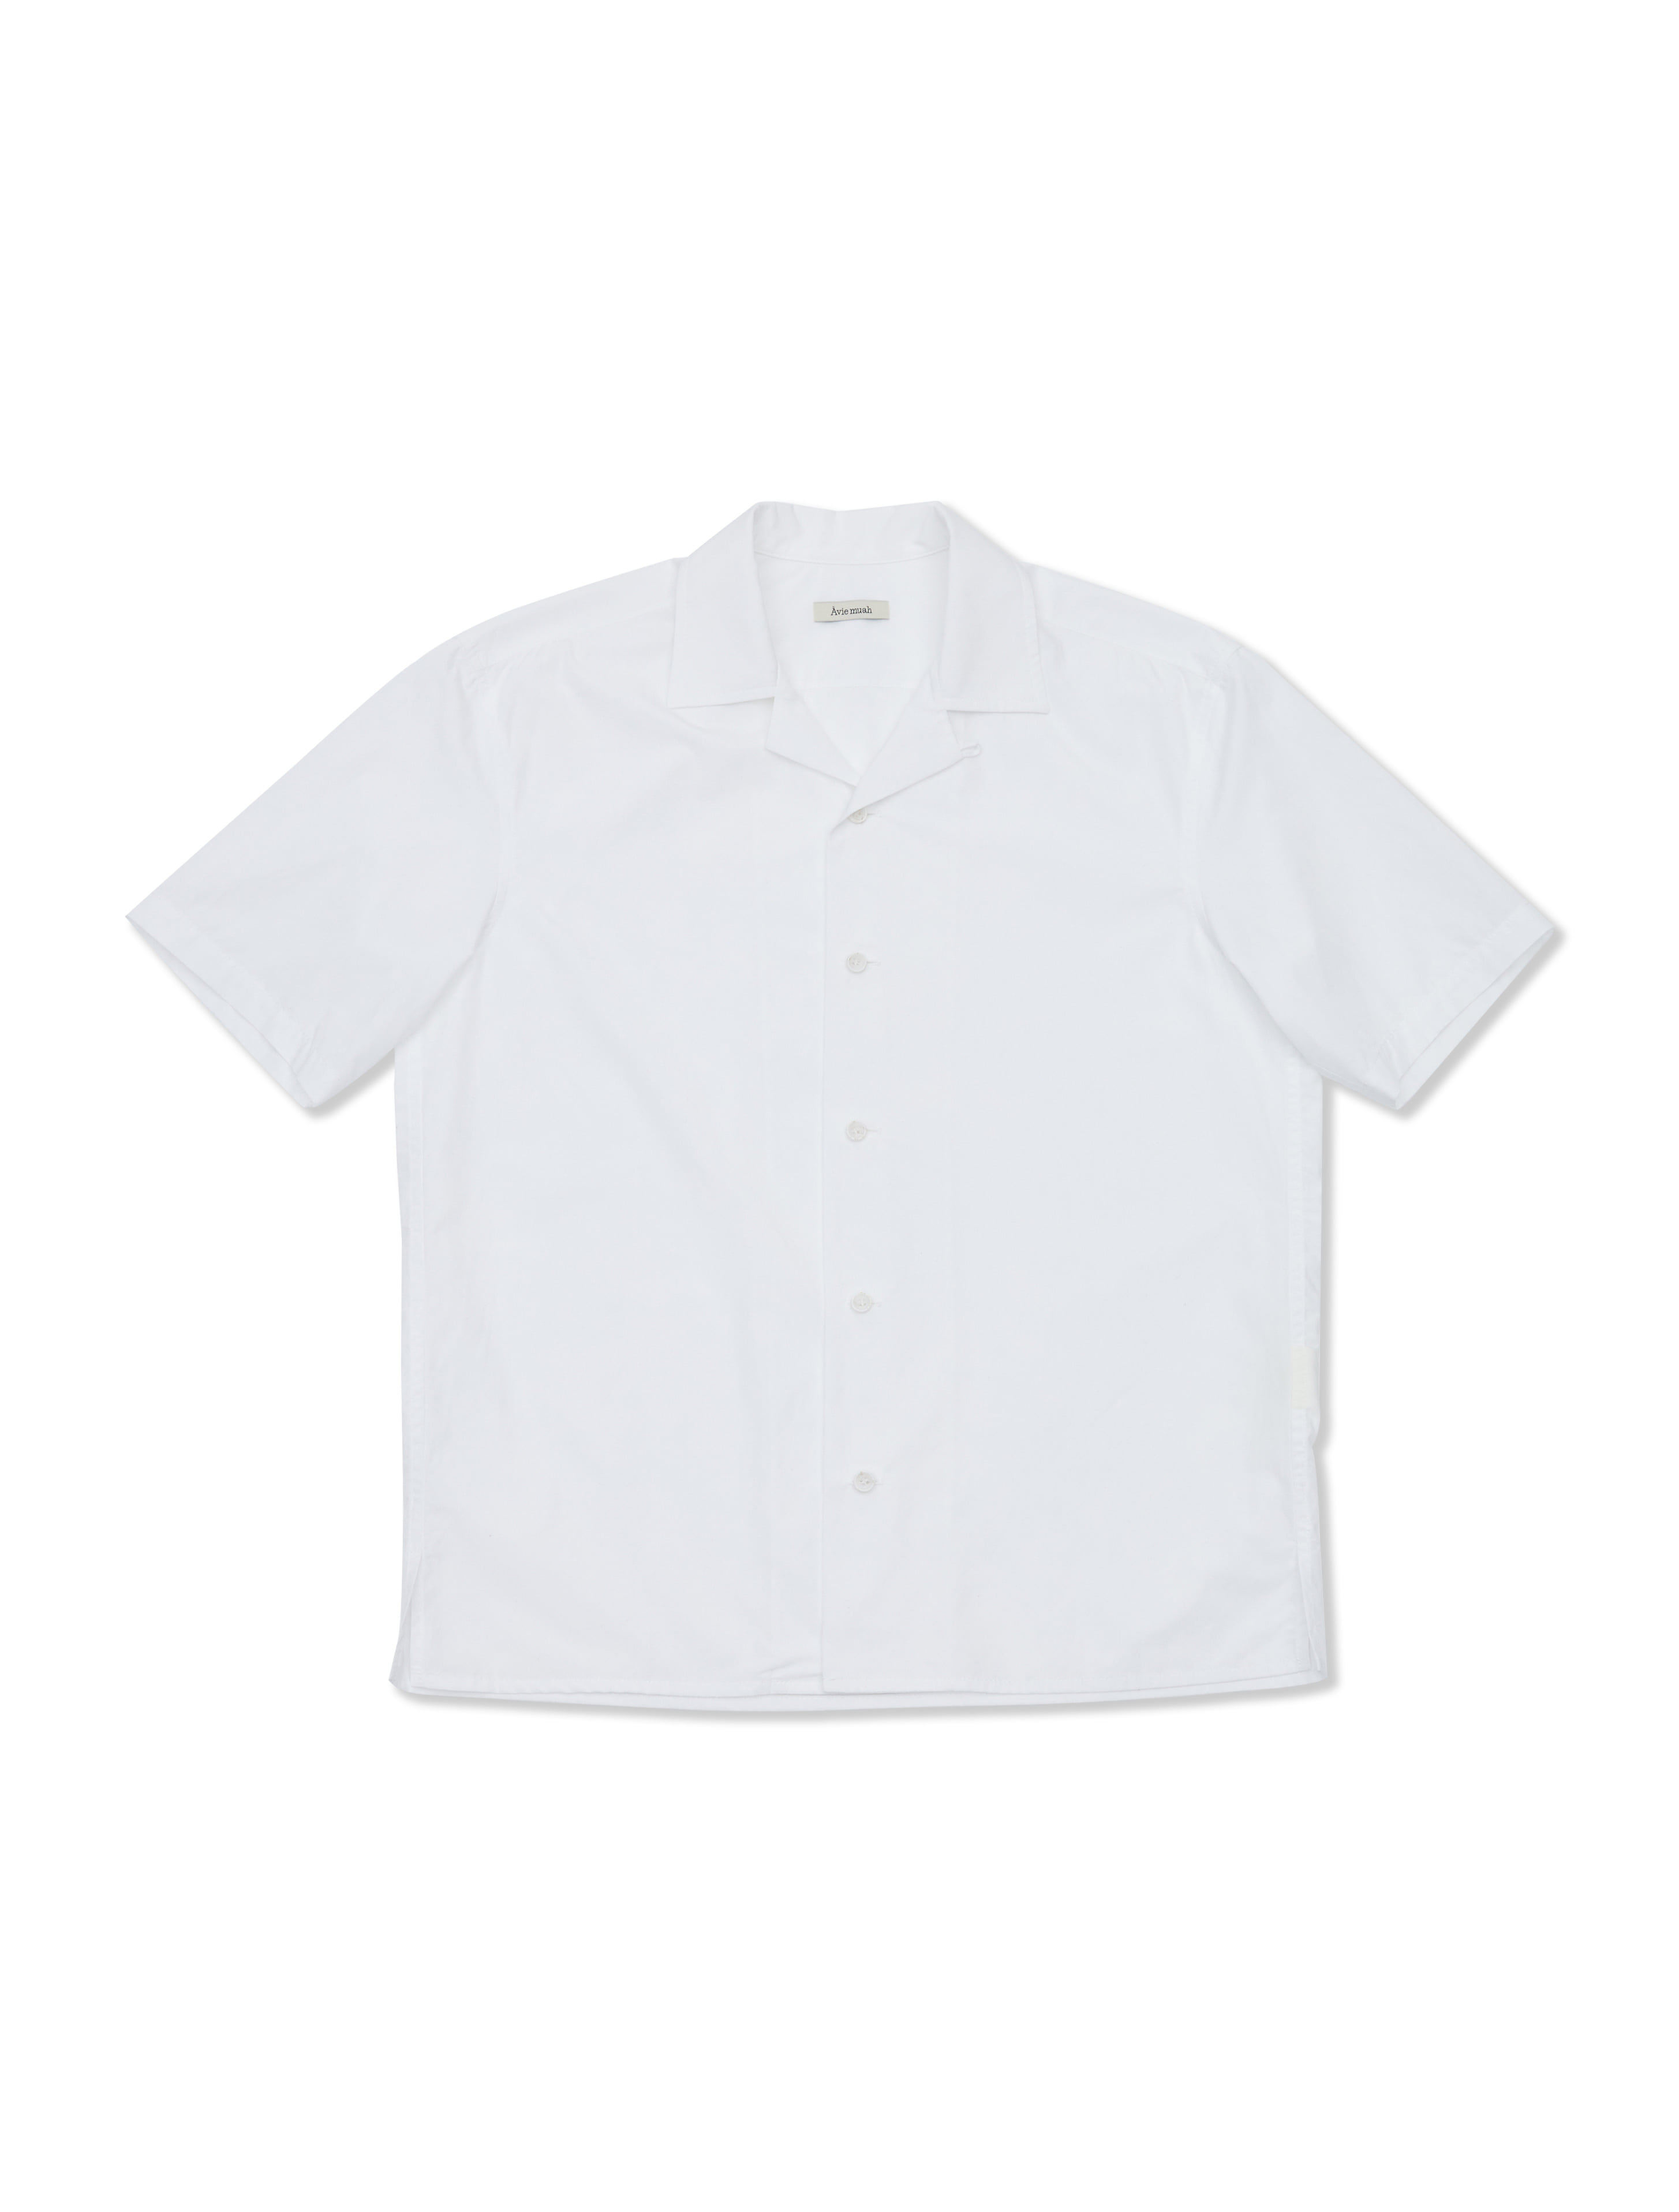 Camp-Collar Cotton-Poplin Shirt